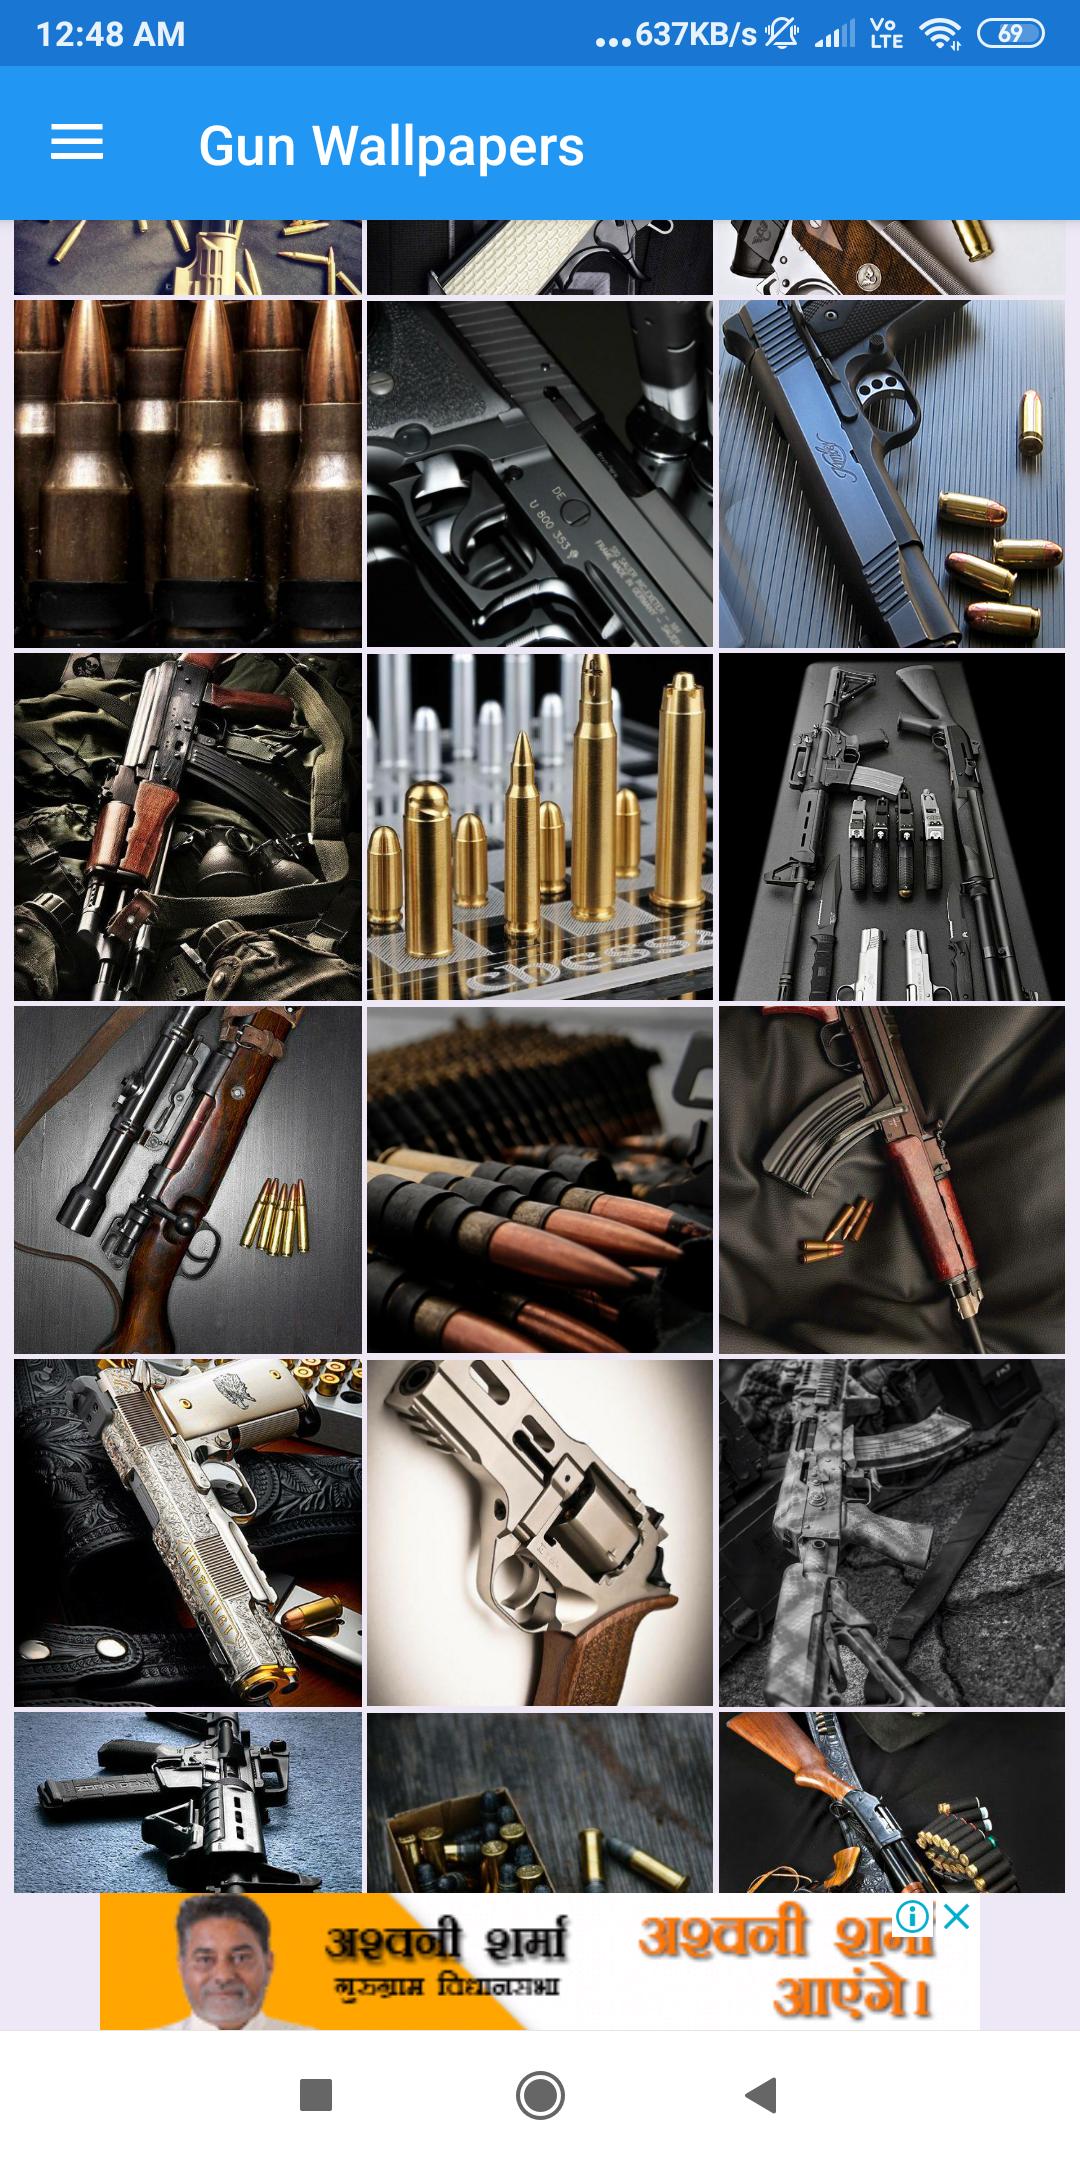 Gun Wallpapers: HD images, Free Pics download 2.1.40 Screenshot 1